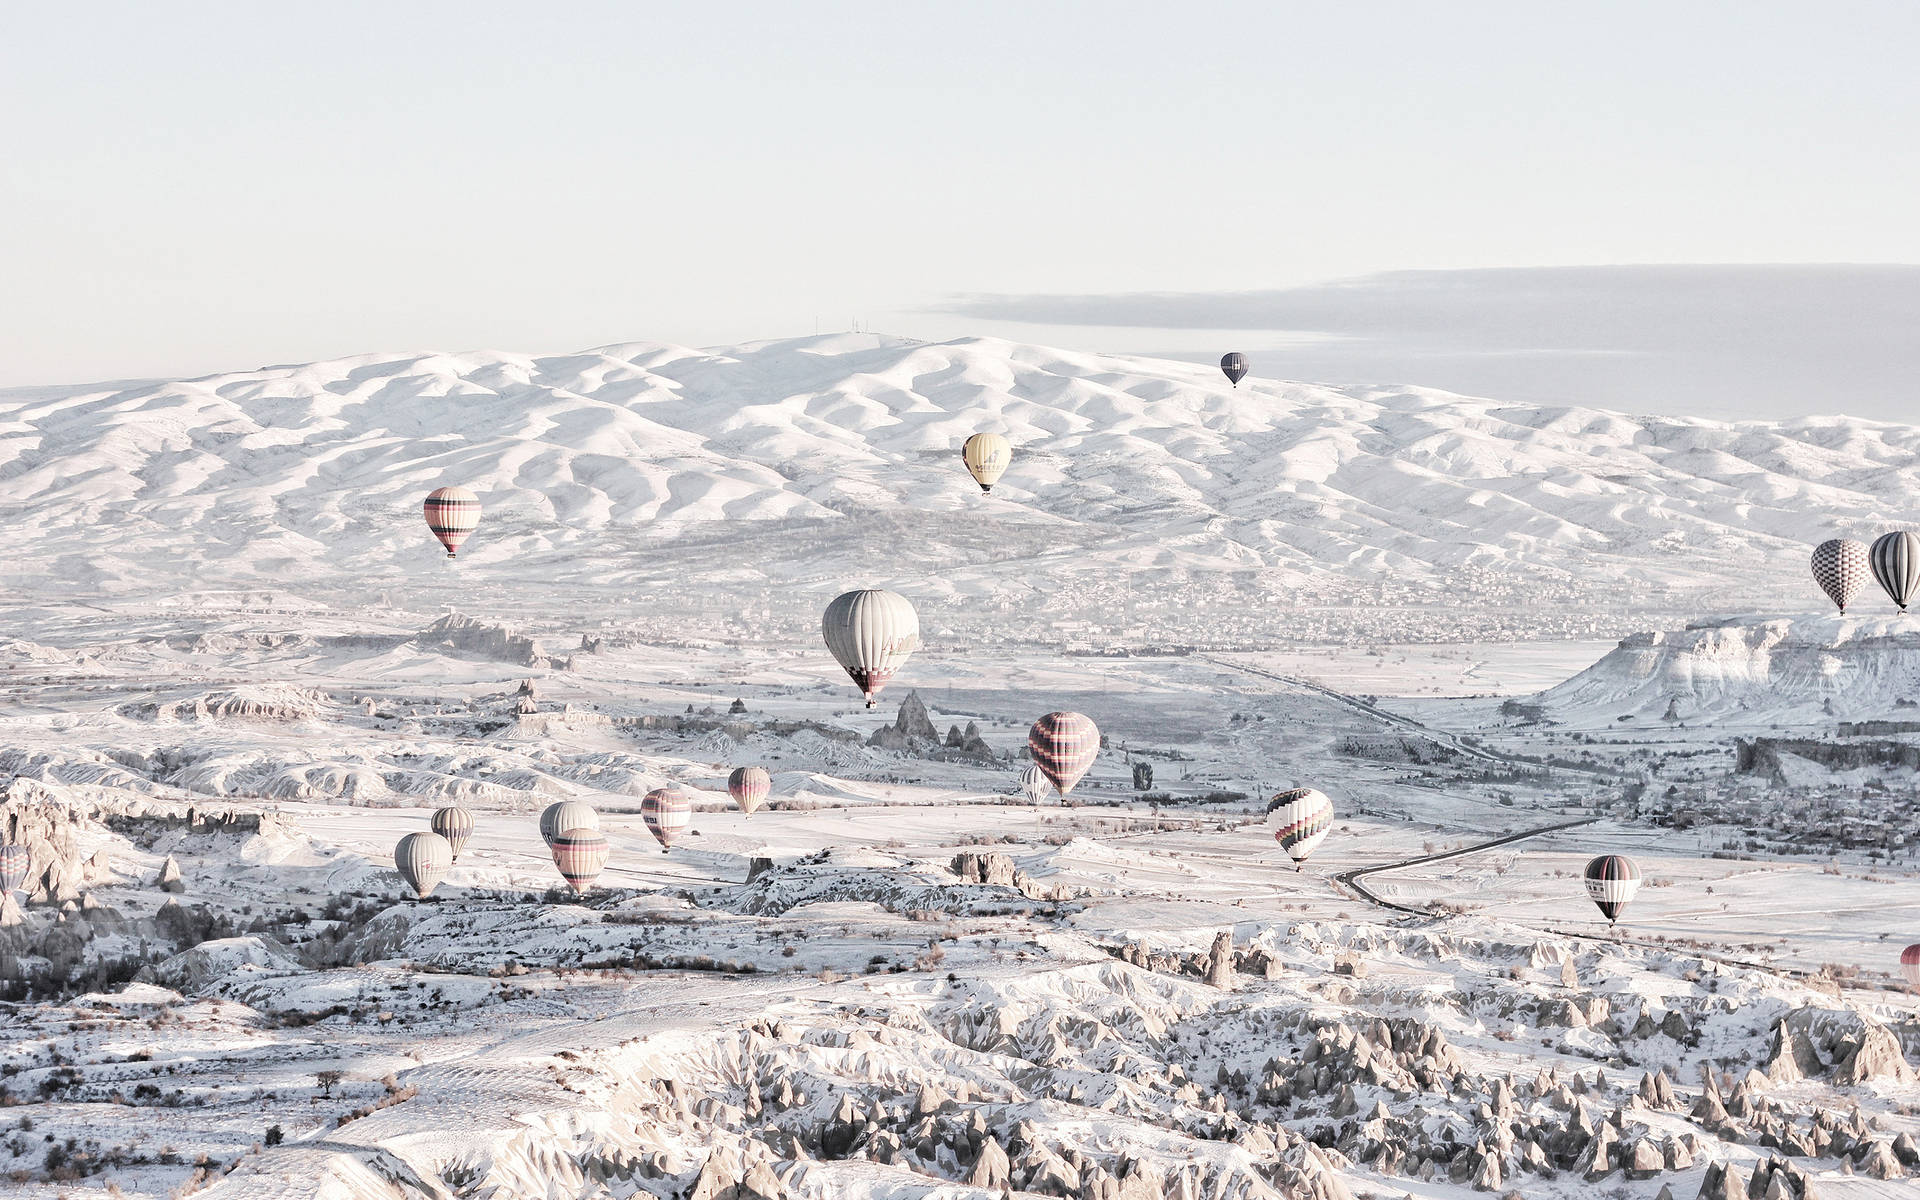 Cappadociawinter Ballons (cappadocia Winter-ballons) Wallpaper